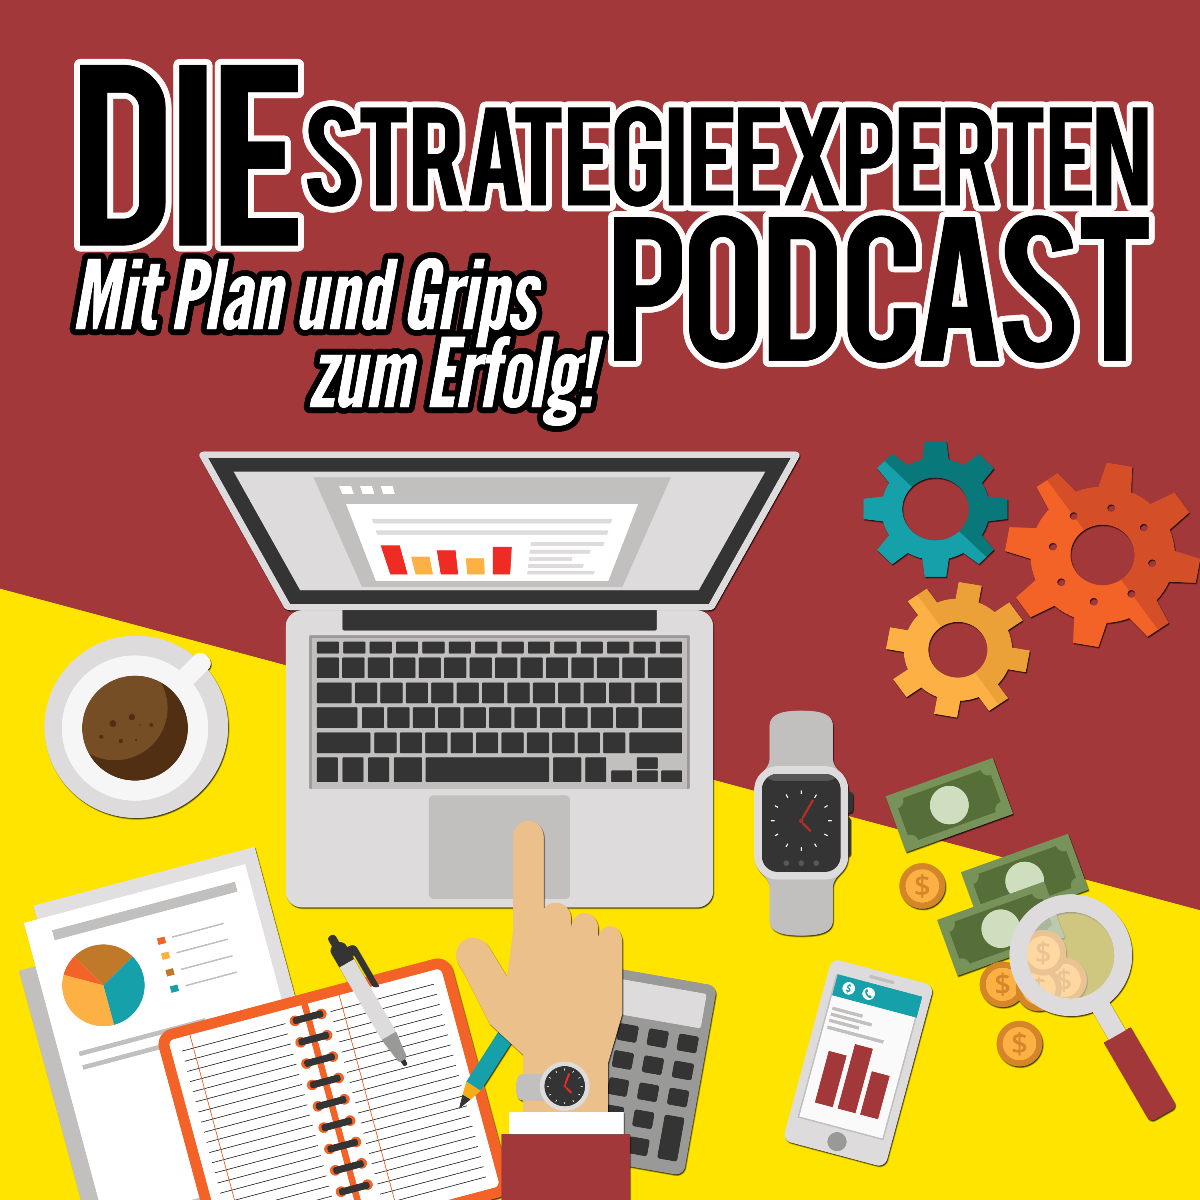 Strategieexperten-Podcast - Mit Plan und Grips zum Erfolg